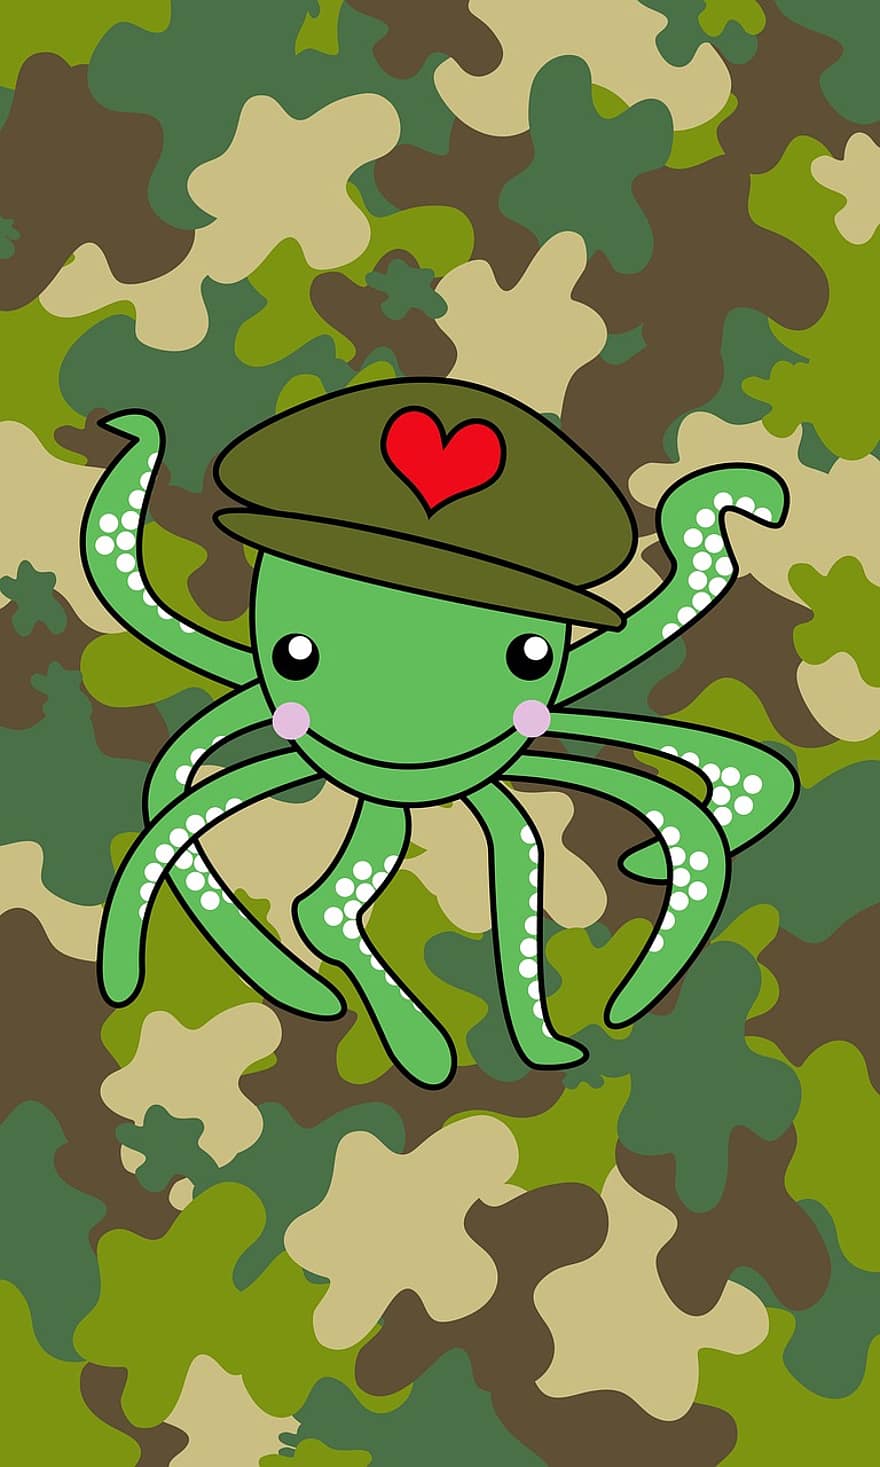 Octopus, leger, oceaan, marinier, zee, onderwater-, dier, natuur, ontwerp, aquatisch, tentakels